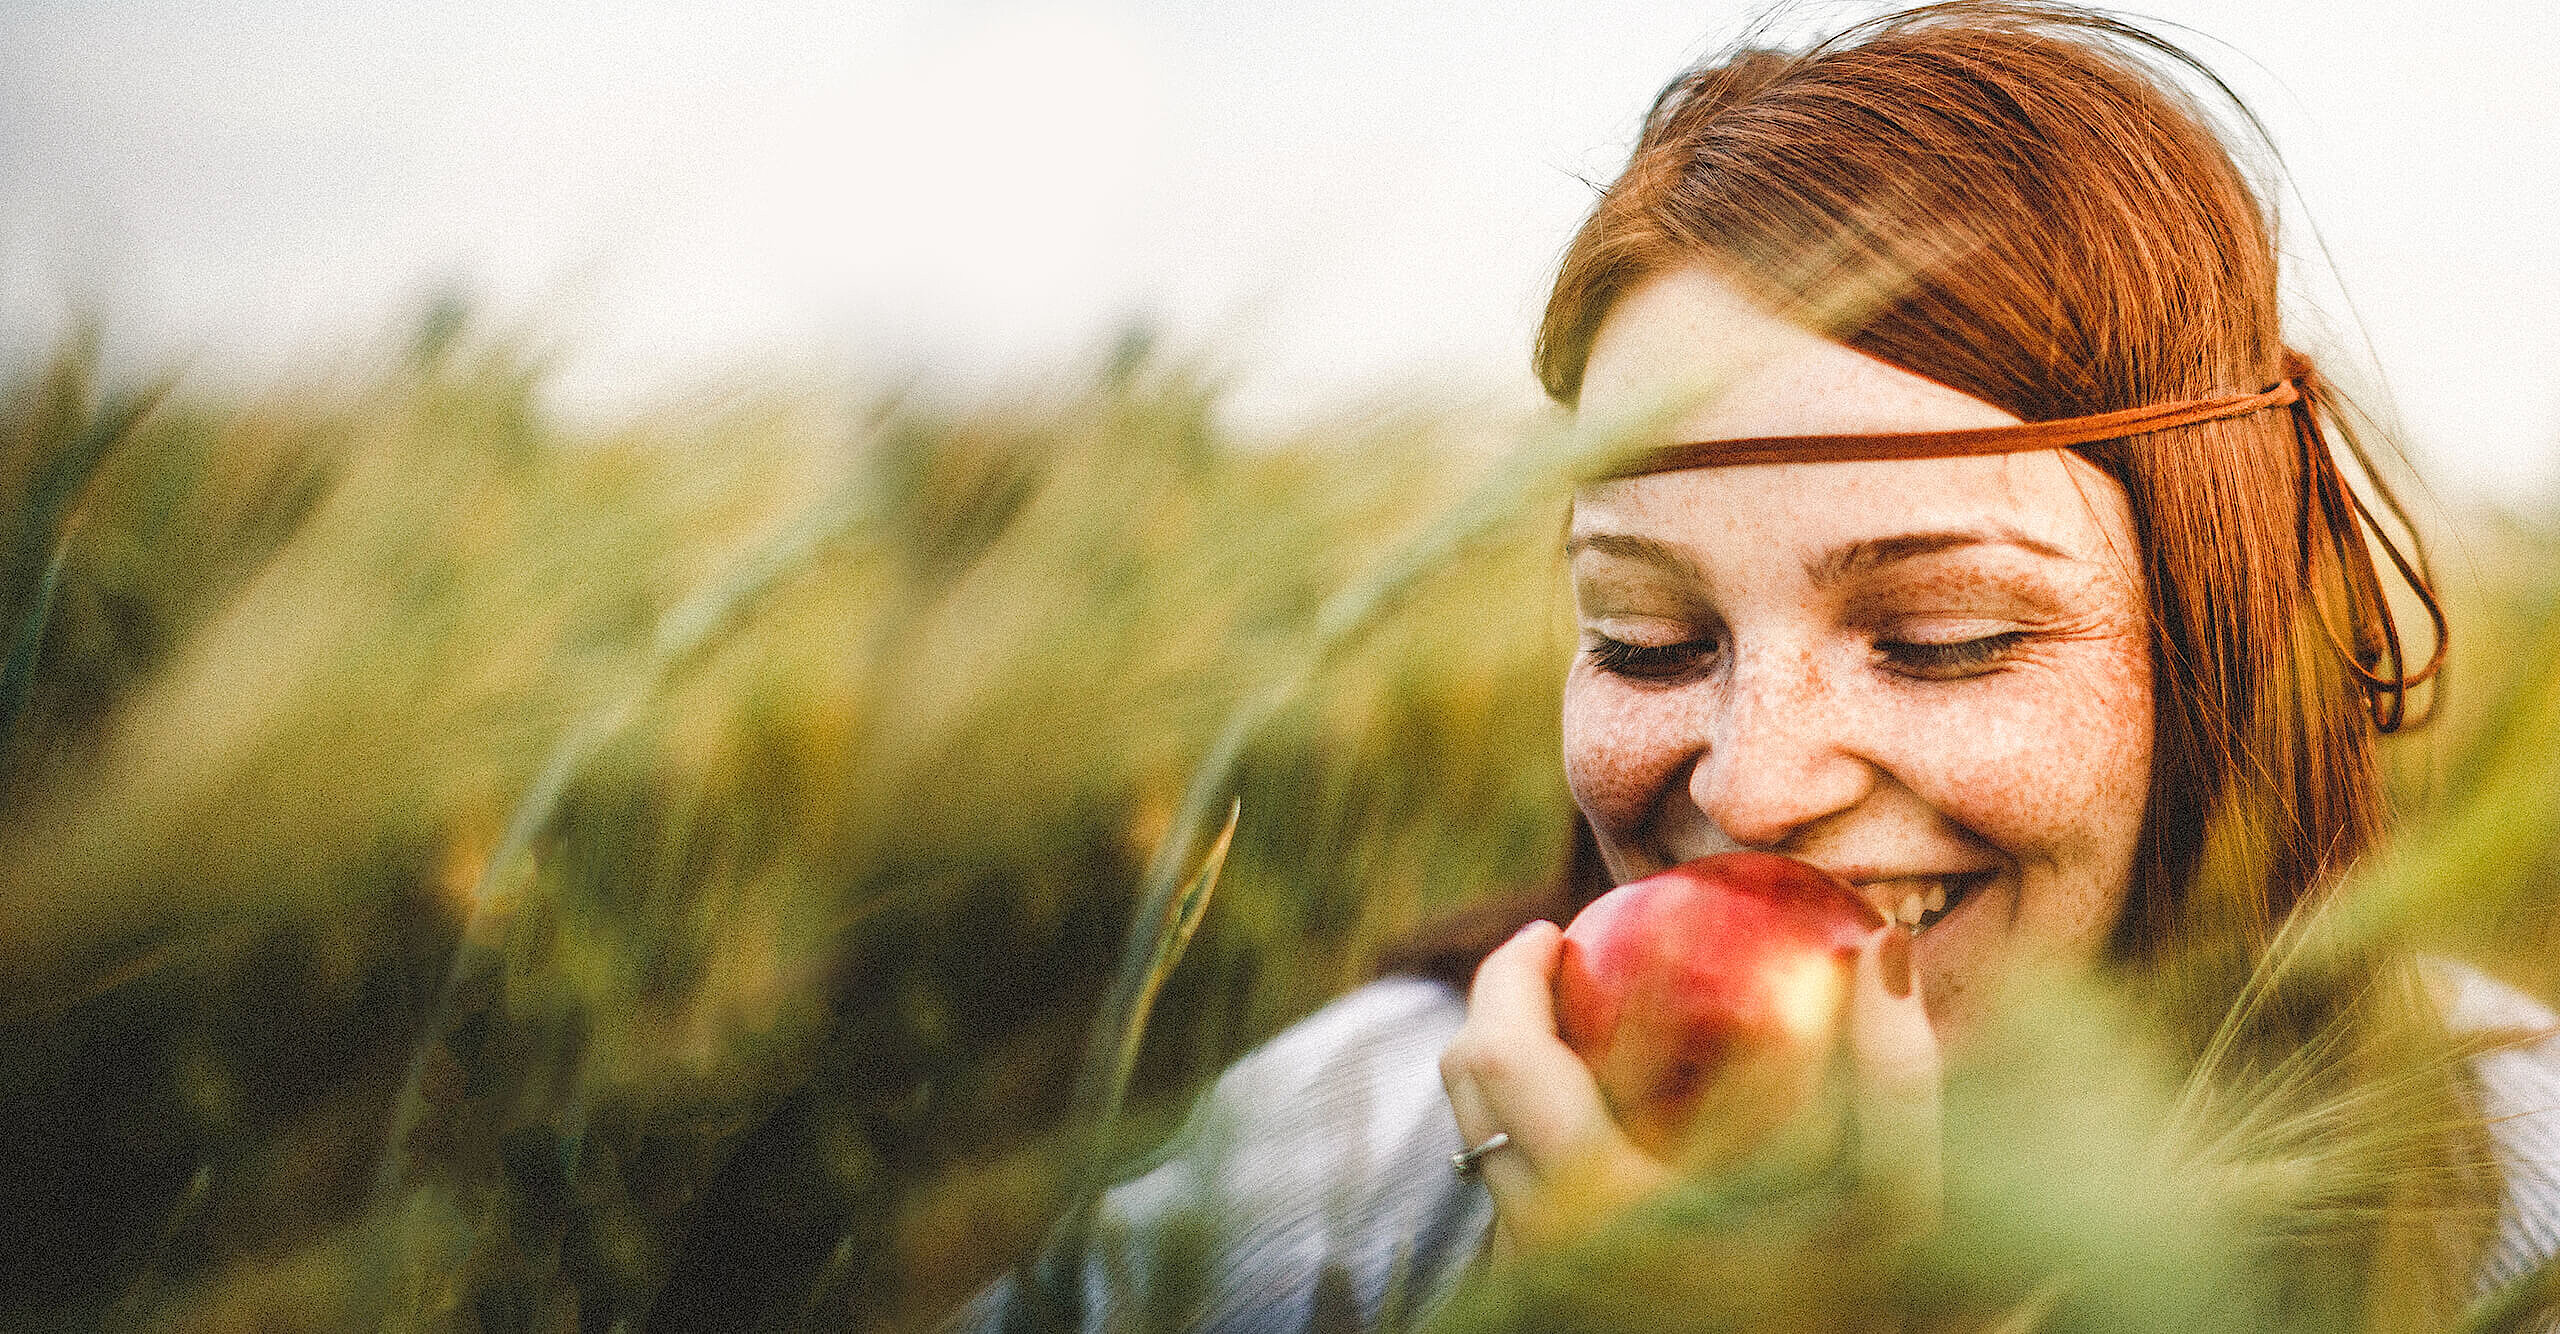 Foto von Frau in der Natur. Sie hält einen Apfel und genießt den Augenblick.